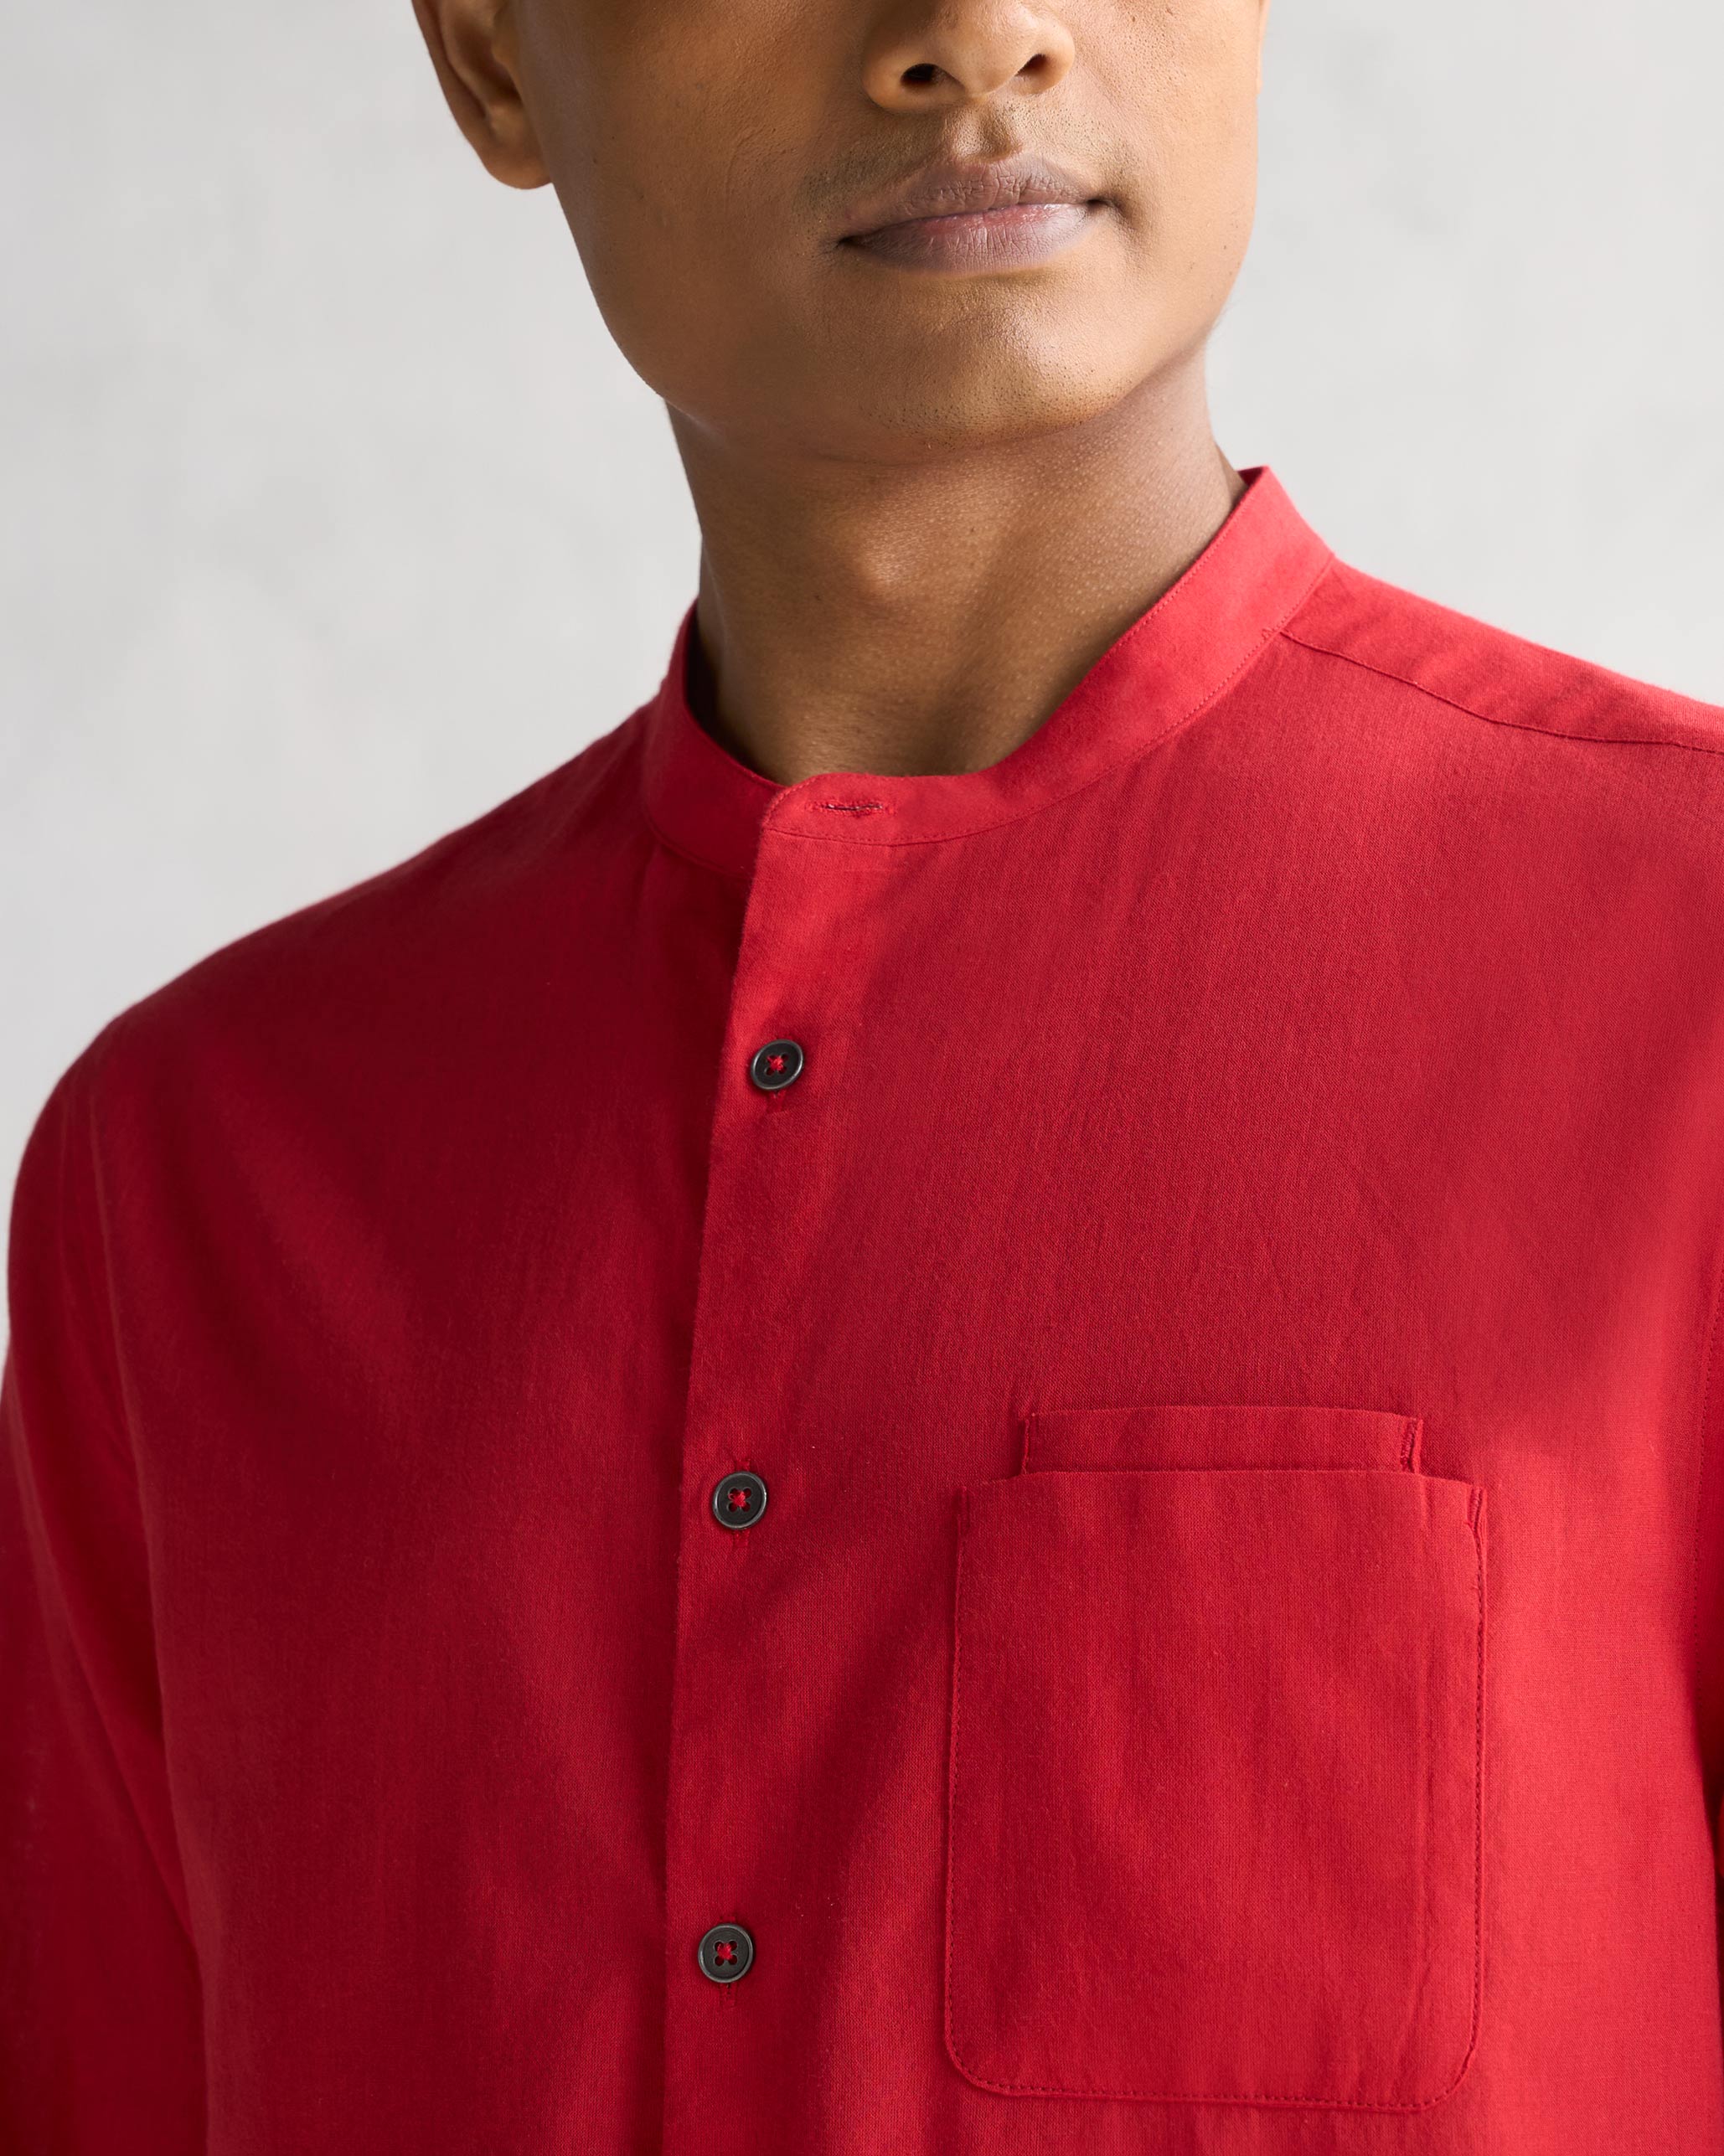 The Comoros Shirt - Red